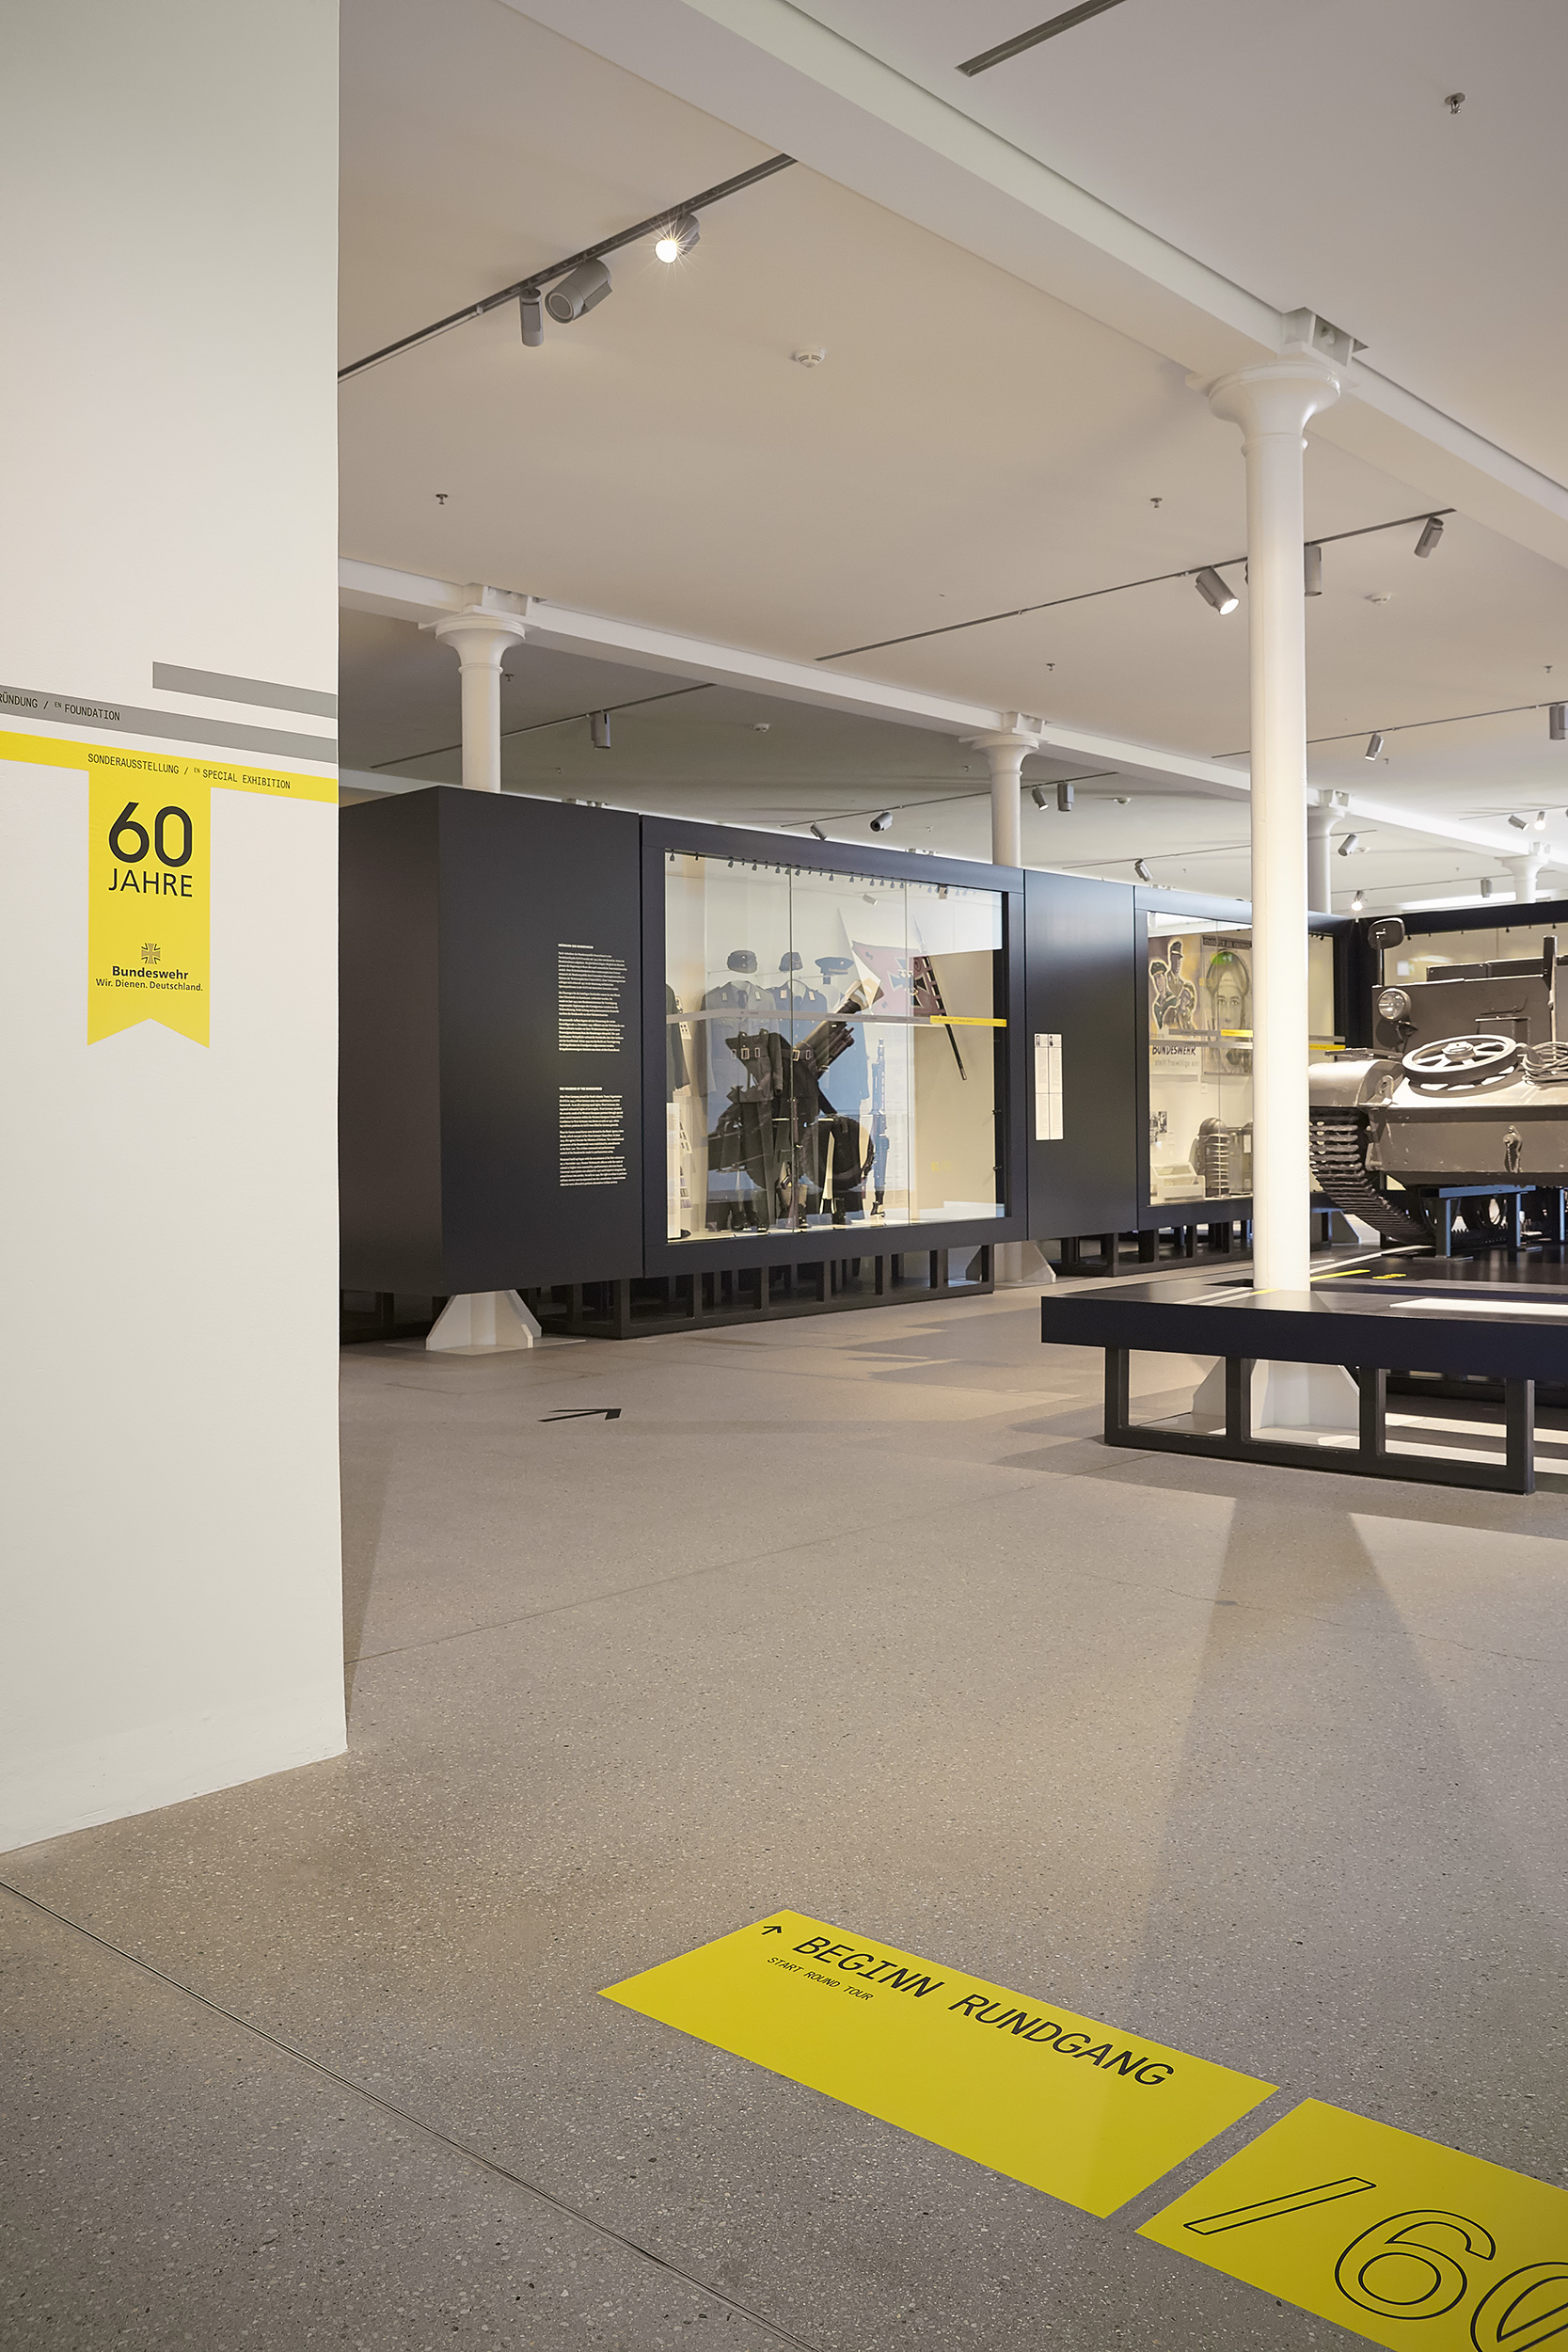 Mäder Haslbeck exhibition / 60 Jahre Bundeswehr